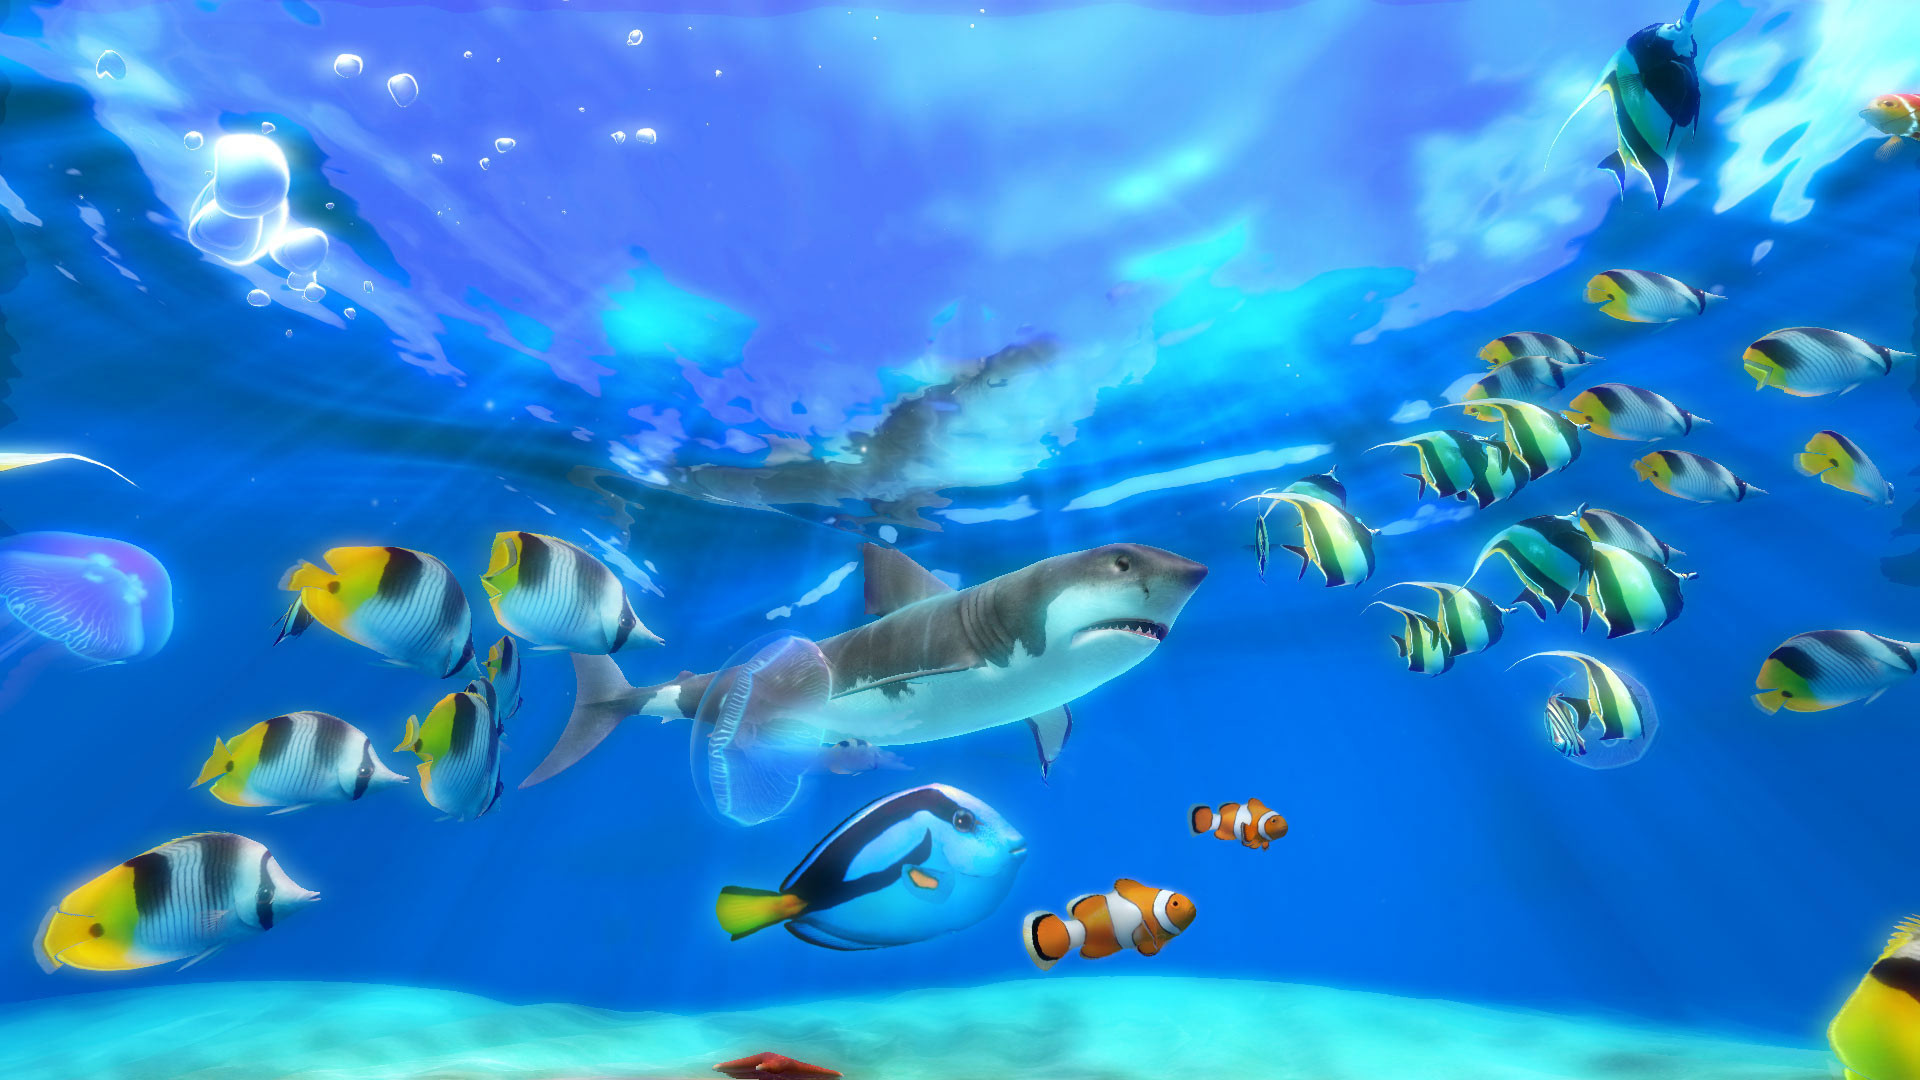 Live Wallpaper Windows 10 Fish - Live Aquarium Screensaver Windows 10 -  1920x1080 Wallpaper 